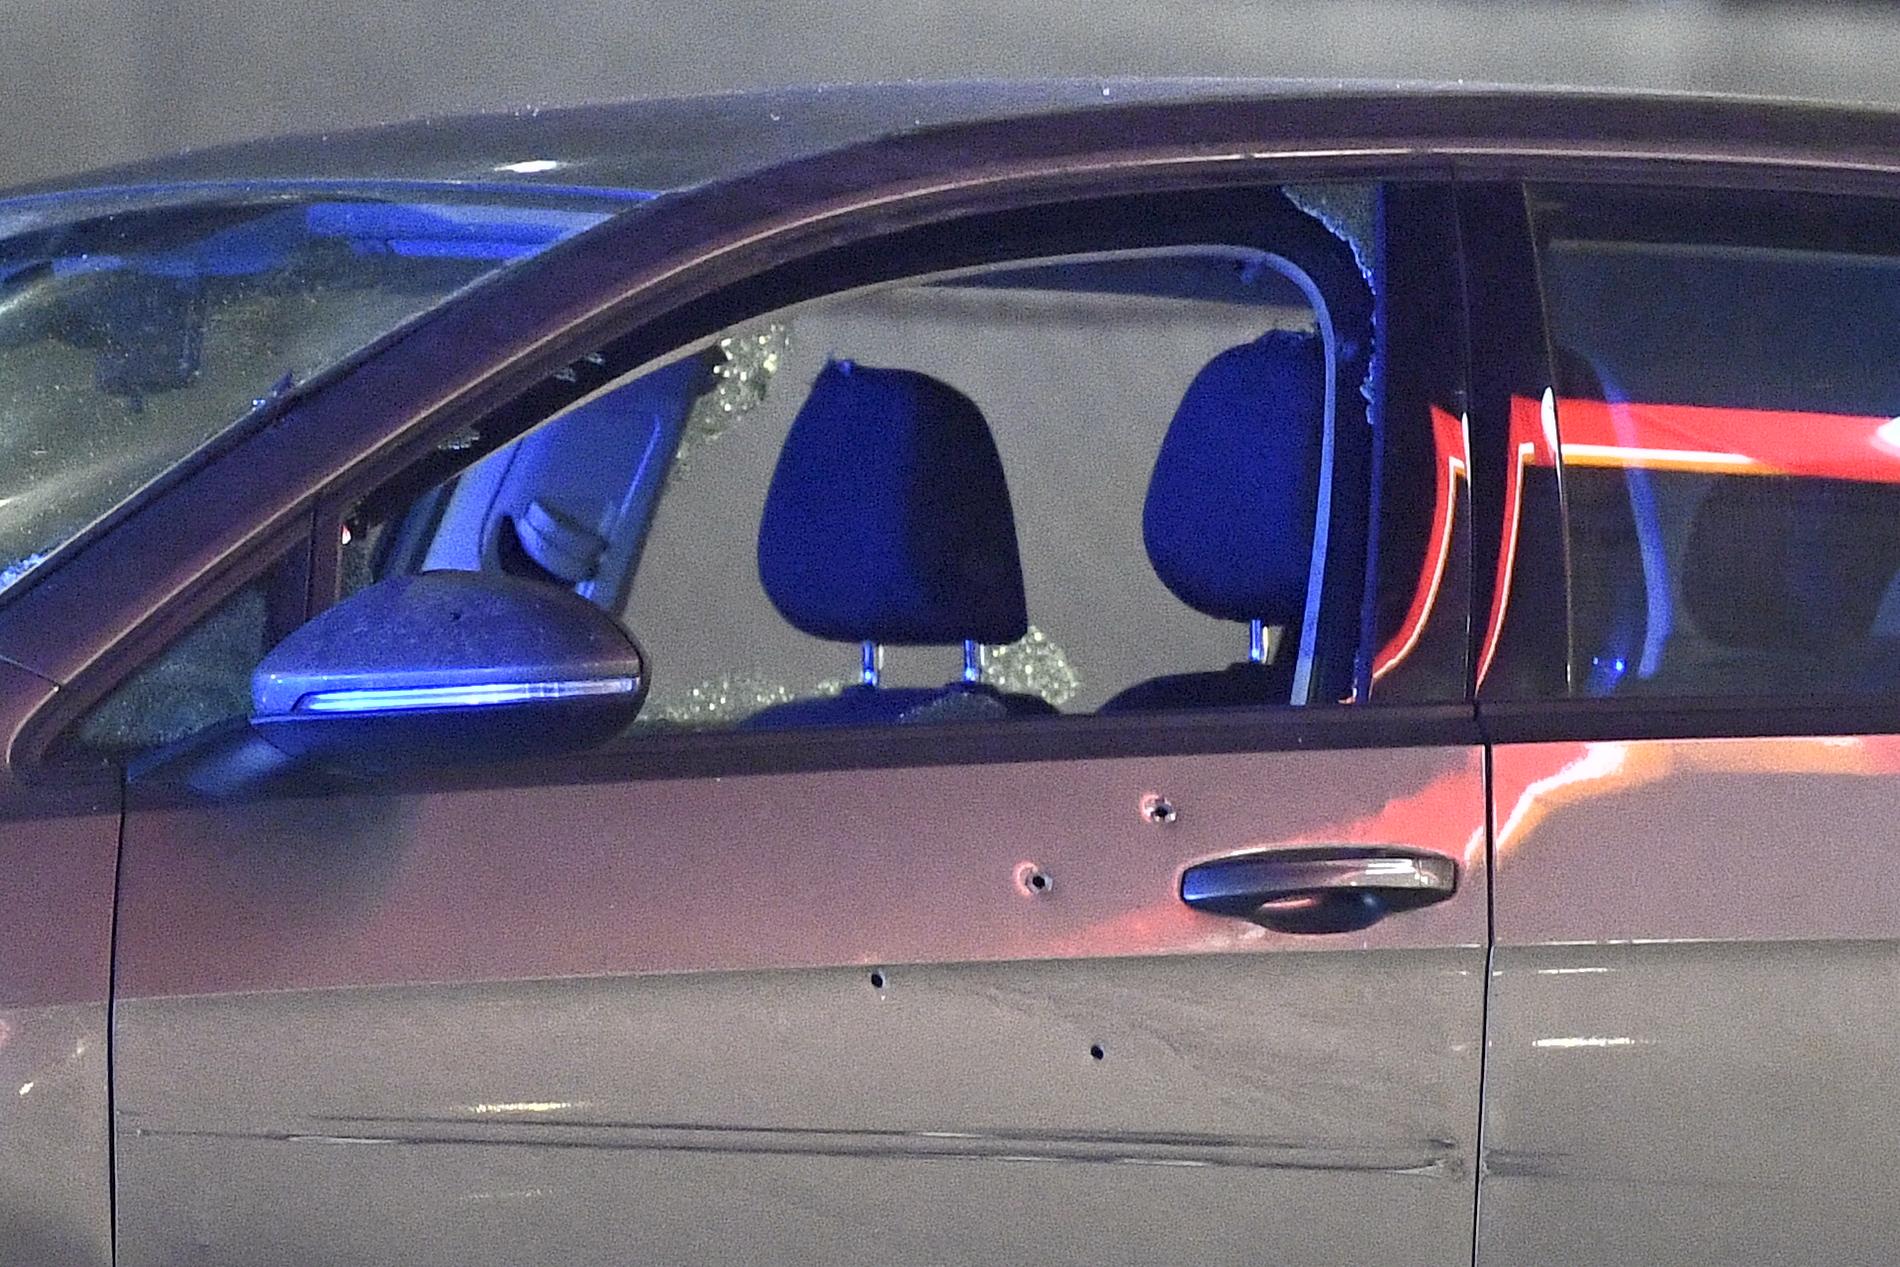 Två personer har förts till sjukhus sedan deras bil beskjutits vid en bensinmack i Kungens kurva. Bilen fick många skotthål.